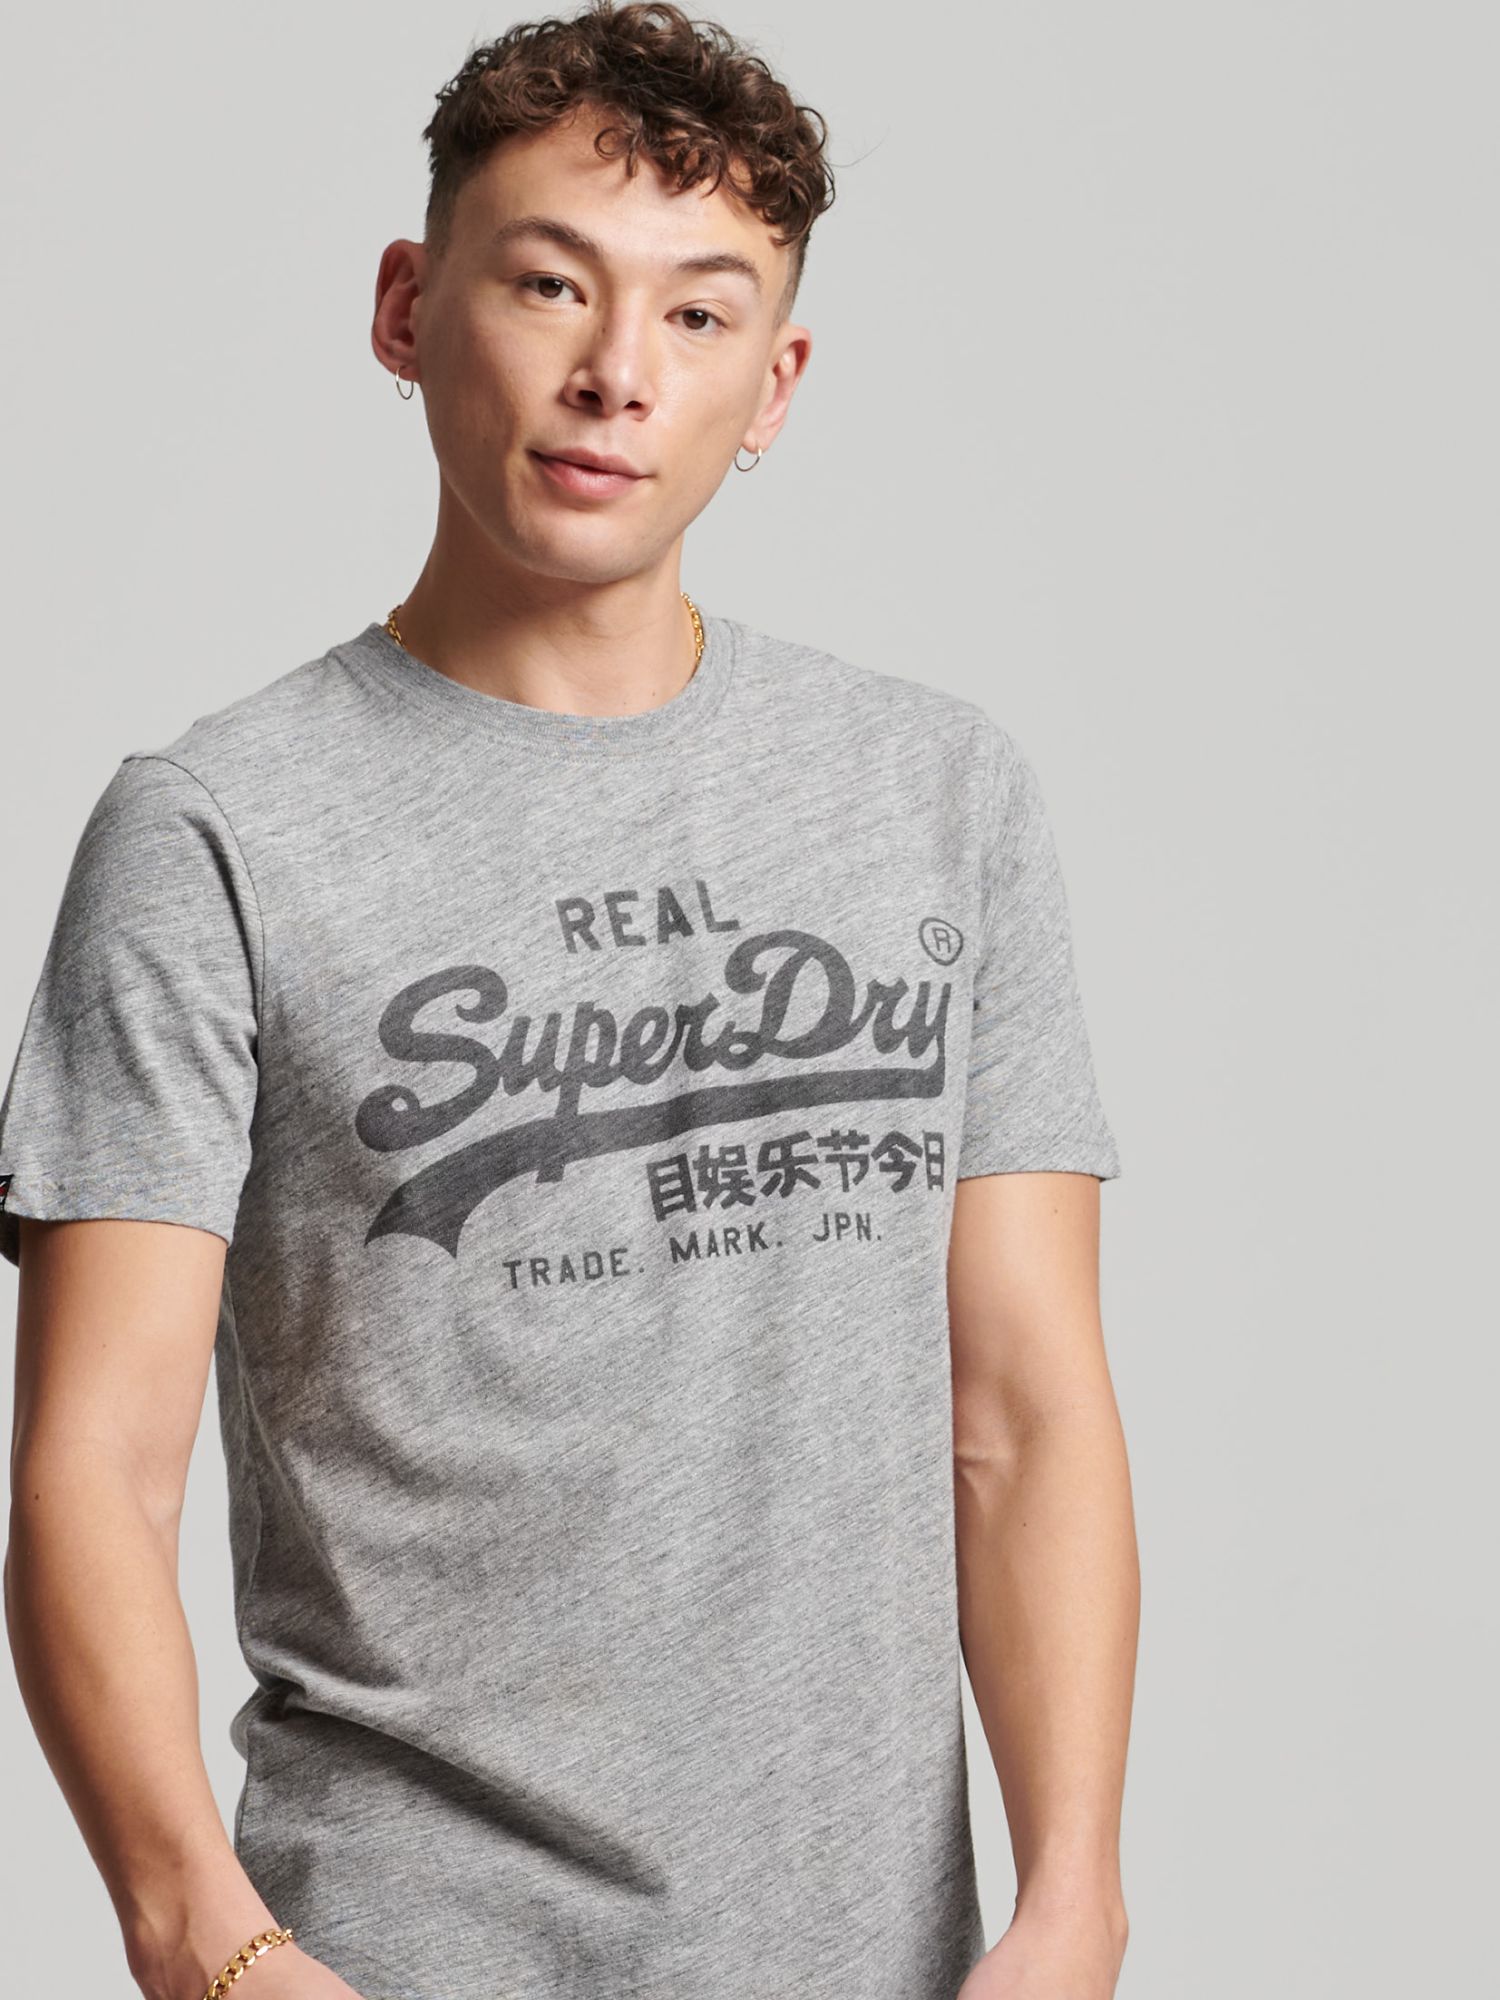 Undertrykkelse kant Skrivemaskine Superdry Vintage Logo T-Shirt, Athletic Grey Marl at John Lewis & Partners